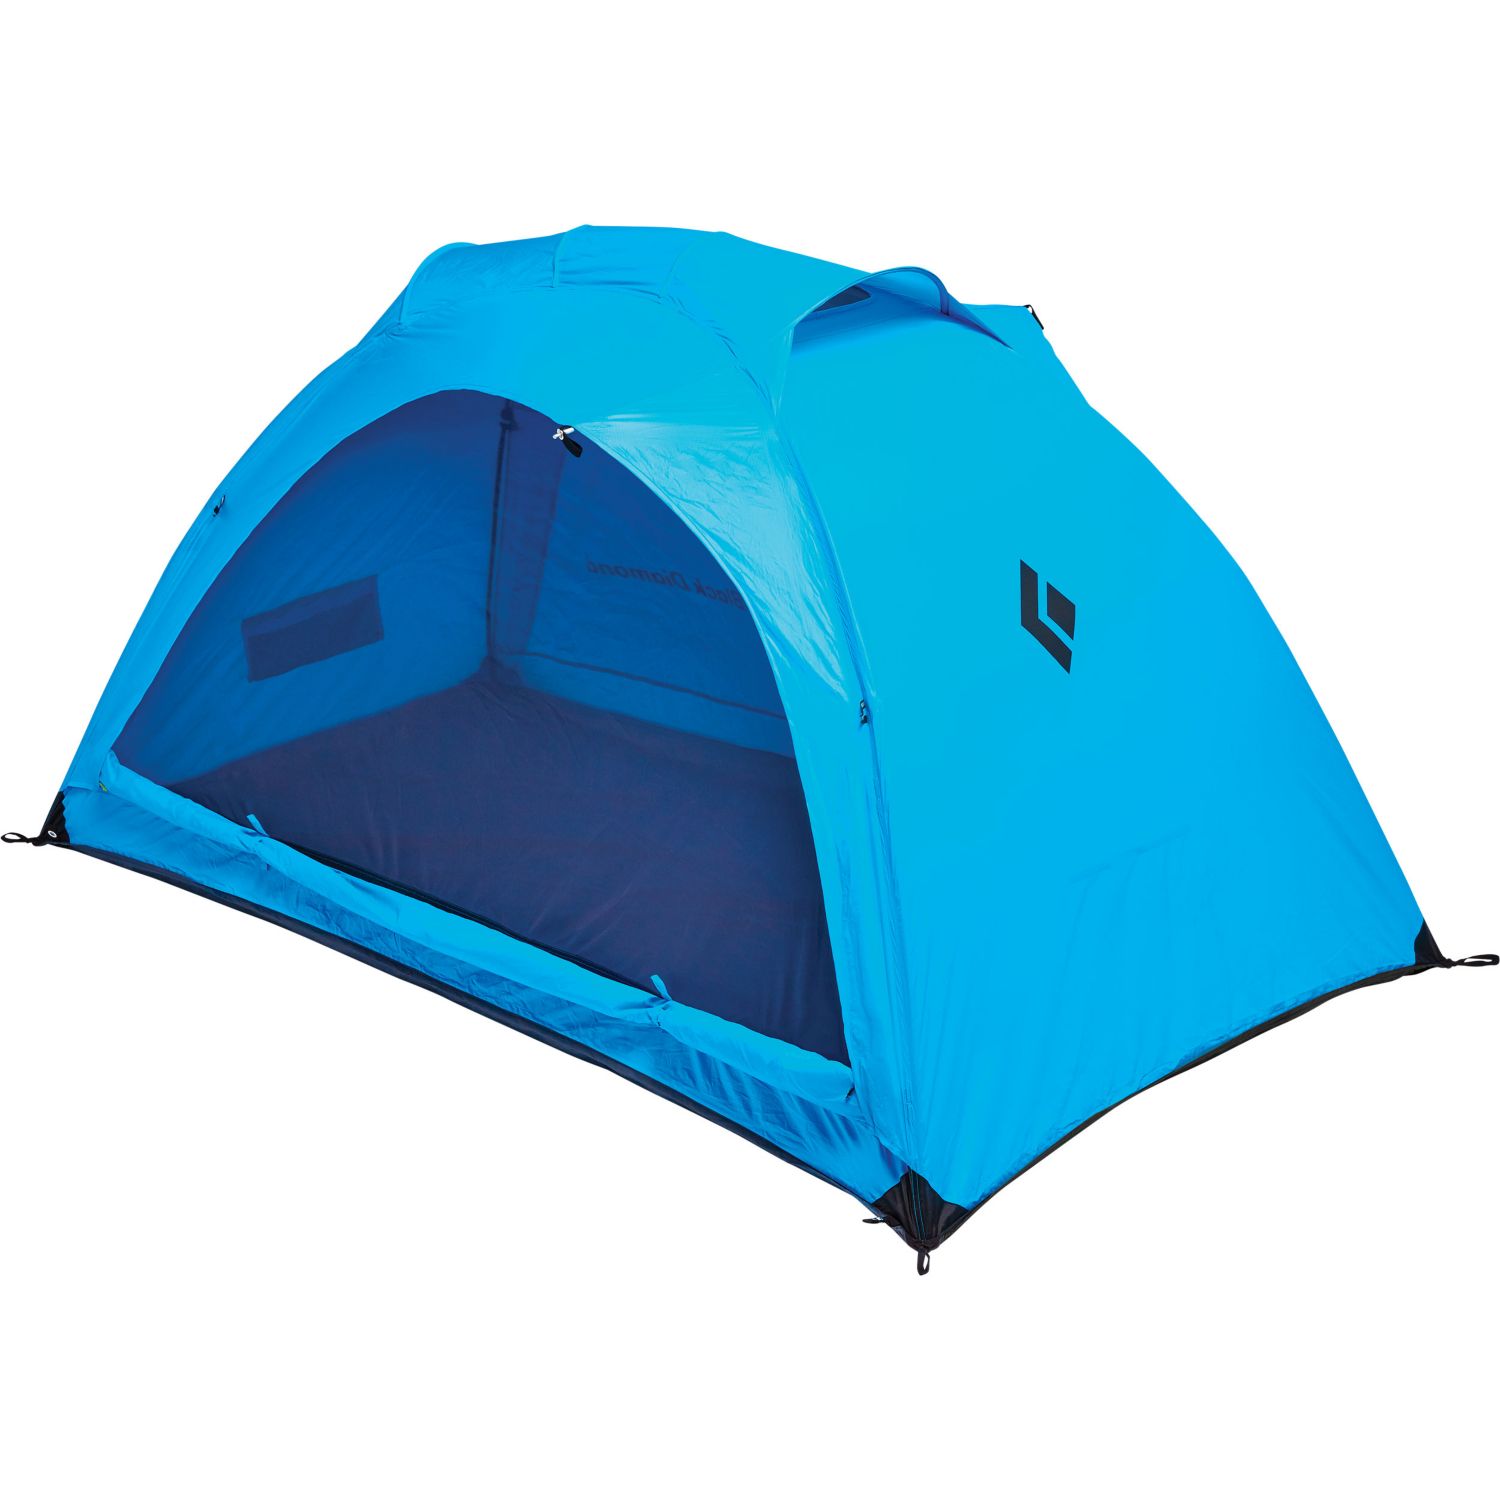 Hilight 2P Tent Distance Blue